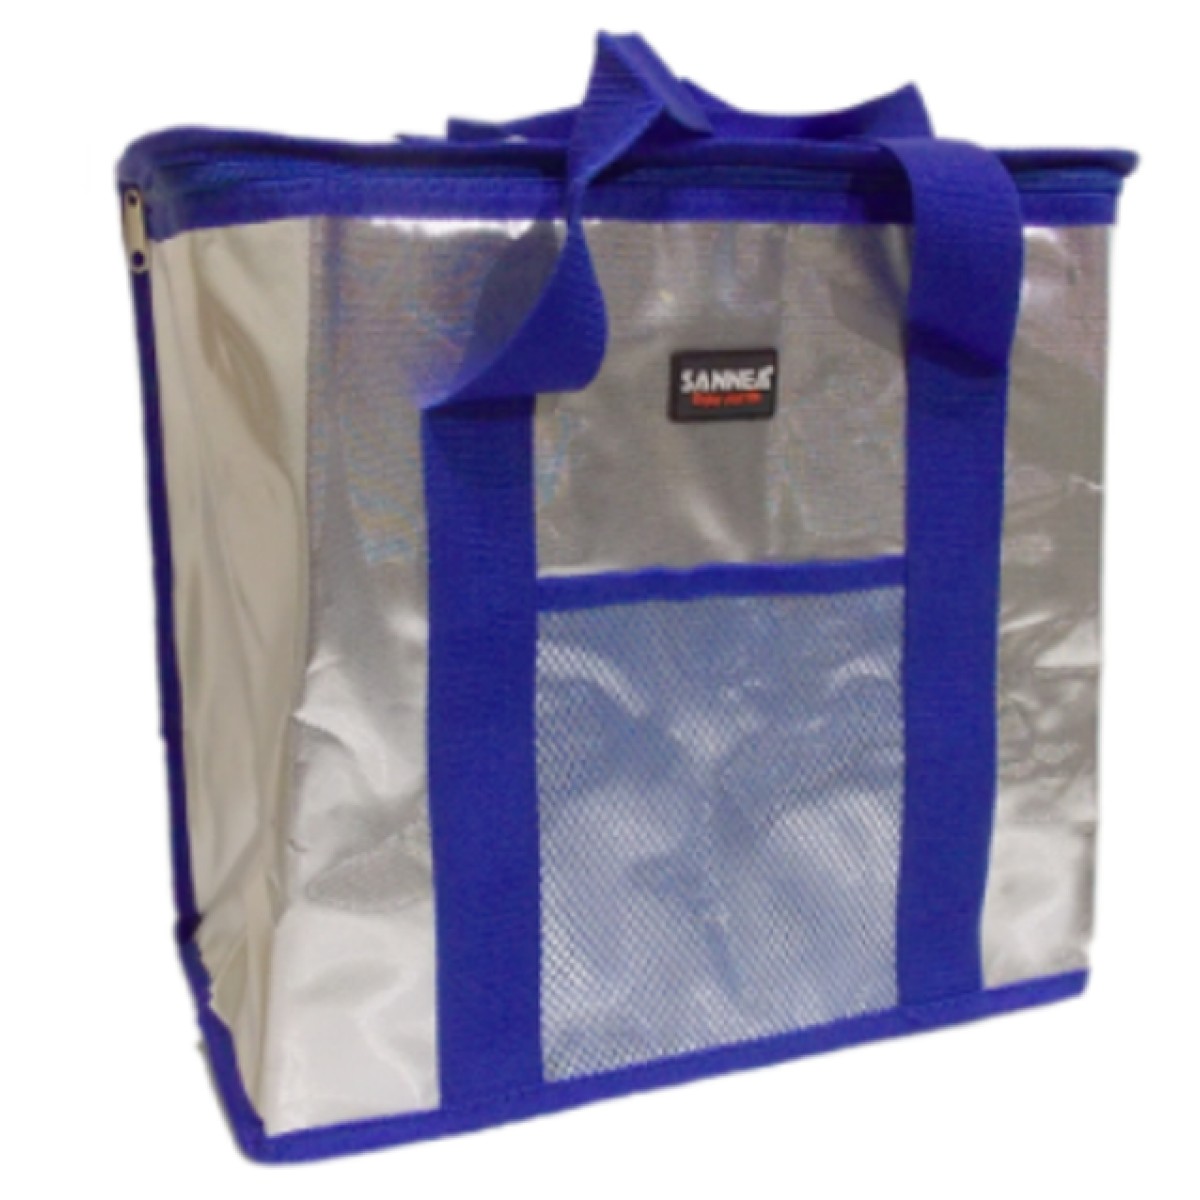 Ισοθερμική τσάντα ψυγείο 10lt μπλε SANNEA